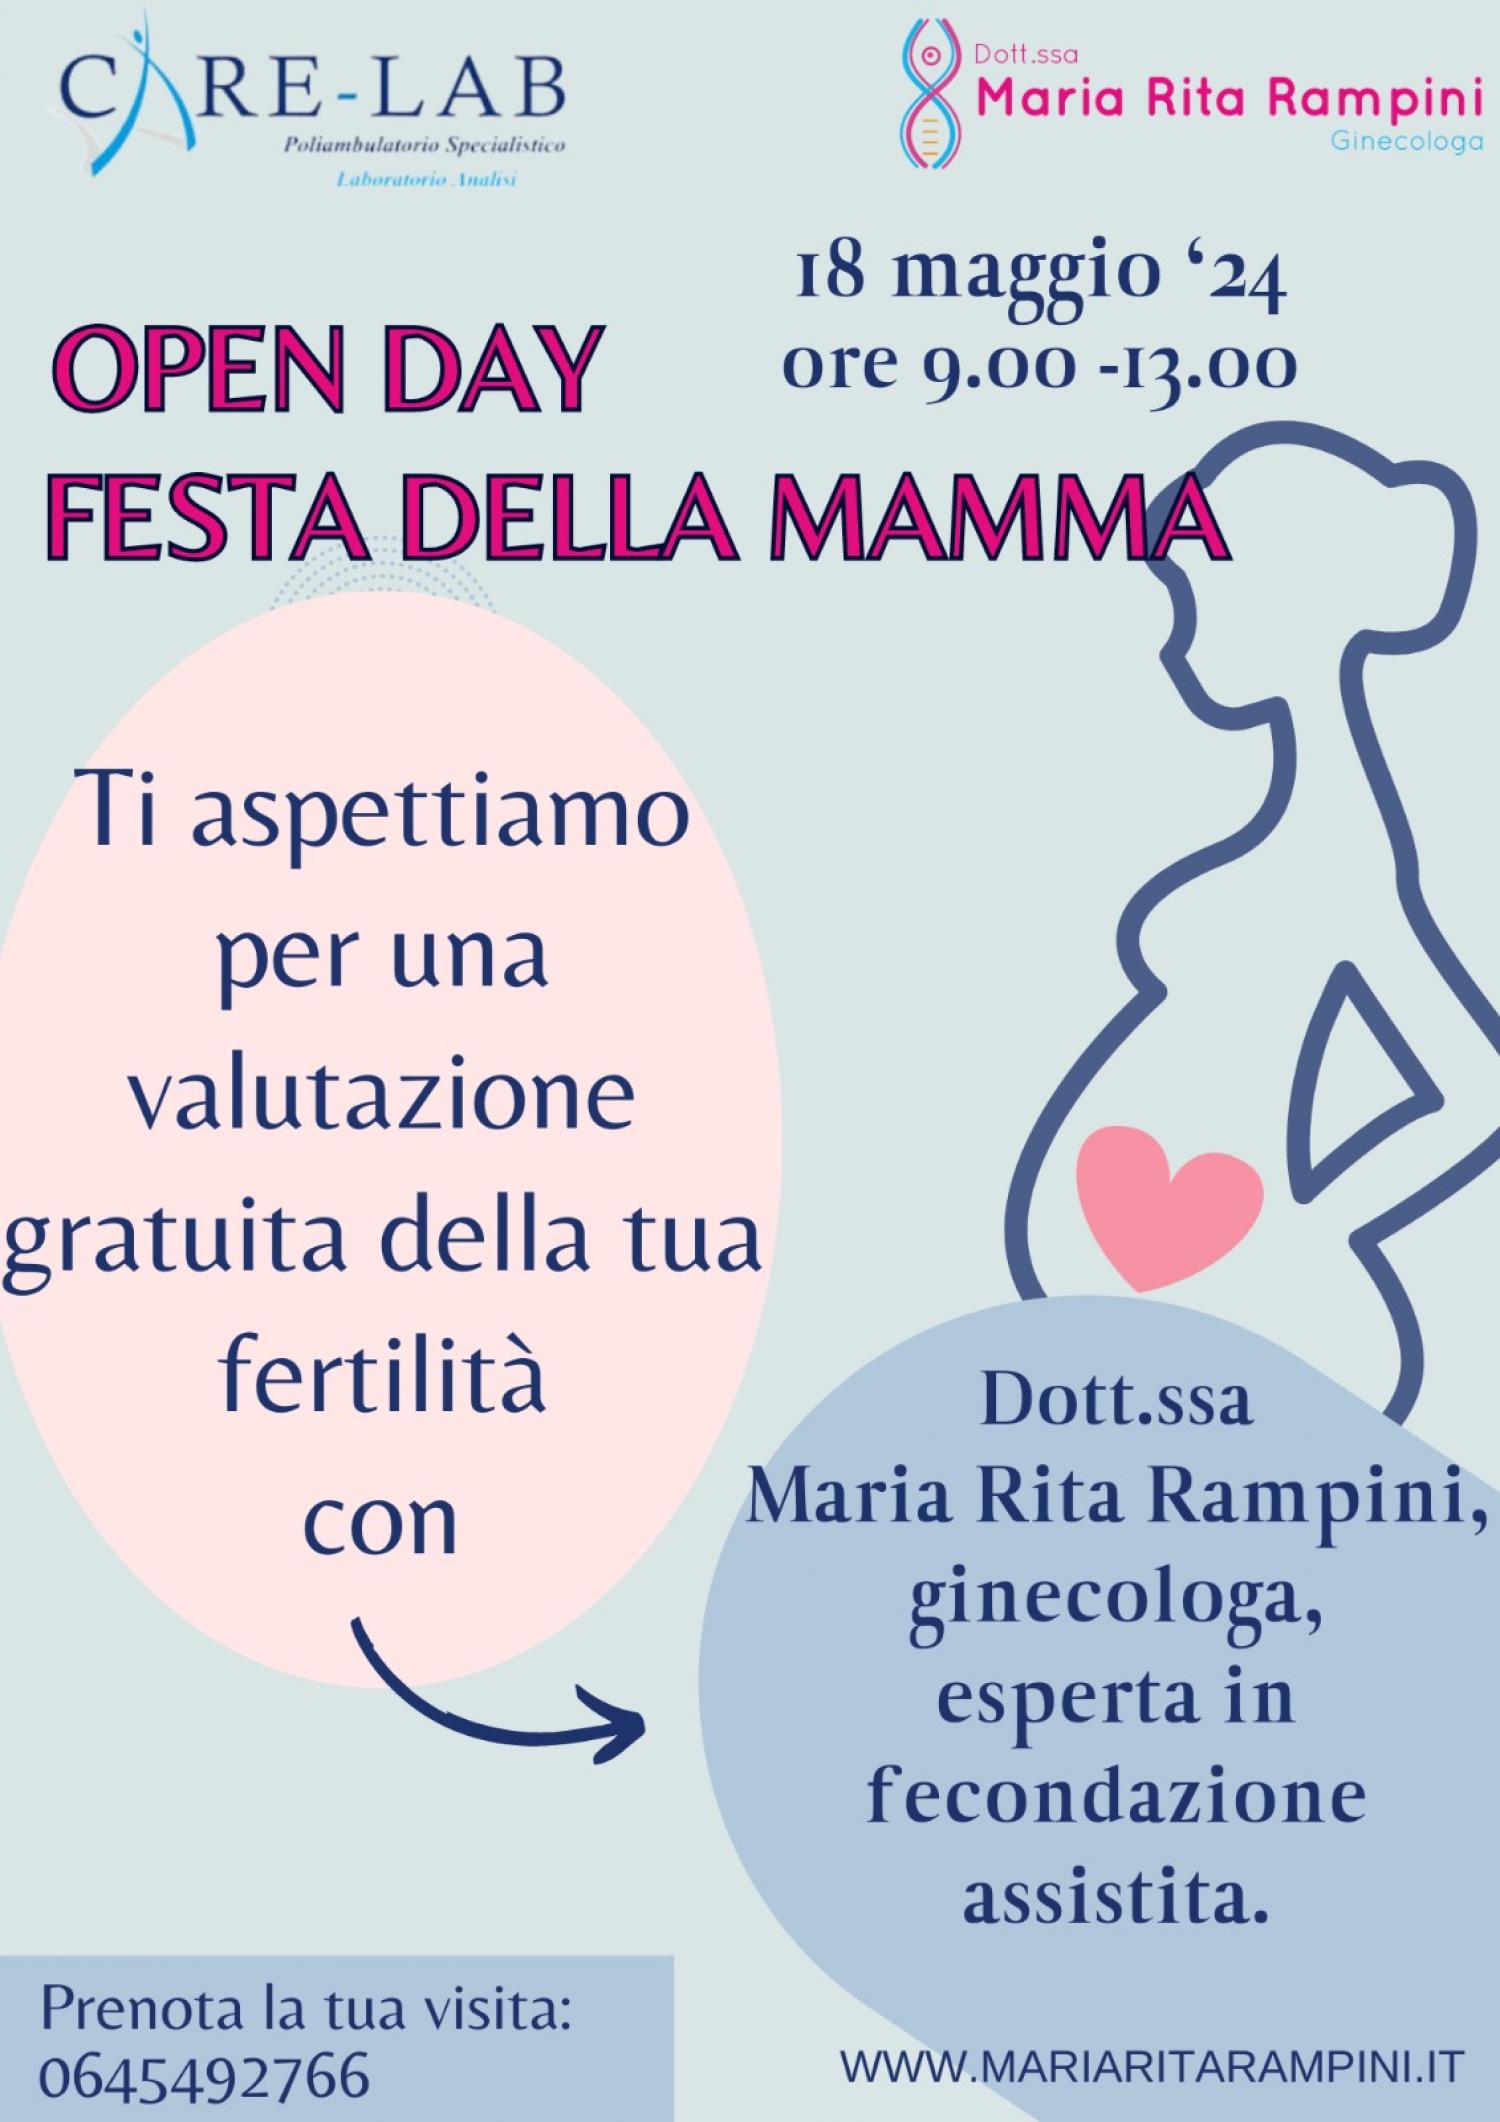 Open Day Festa della mamma